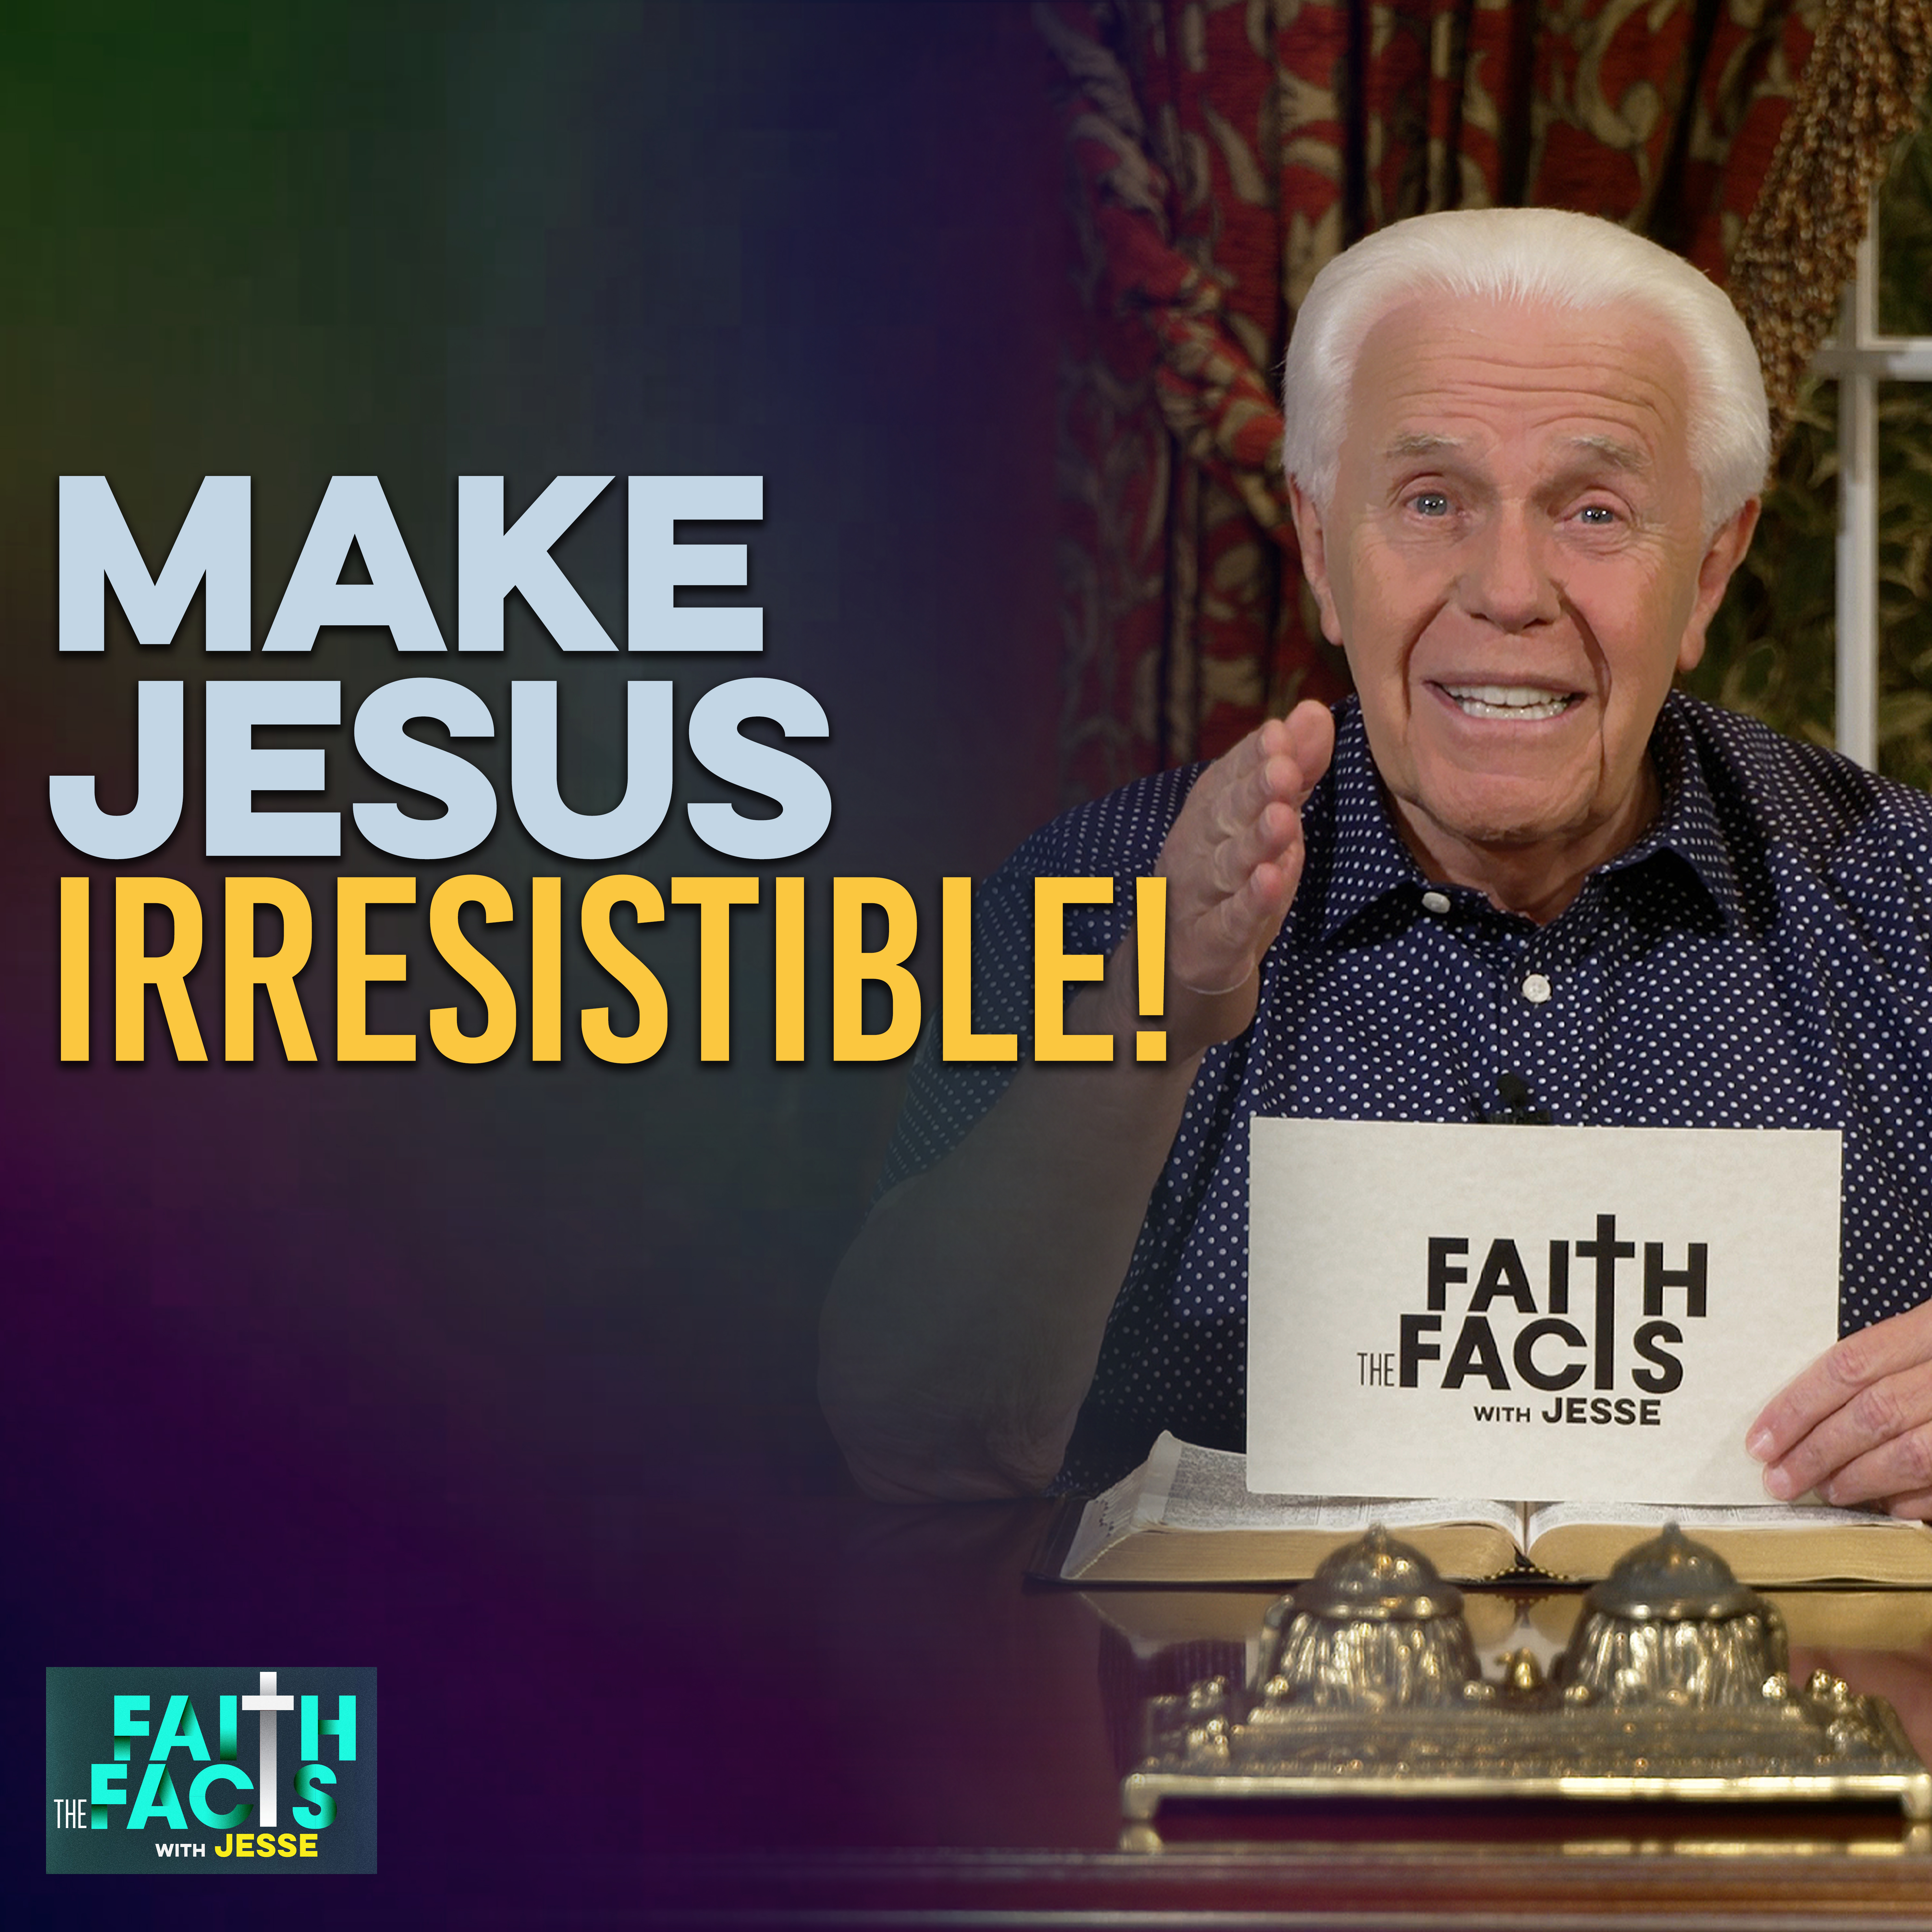 Make Jesus Irresistible!